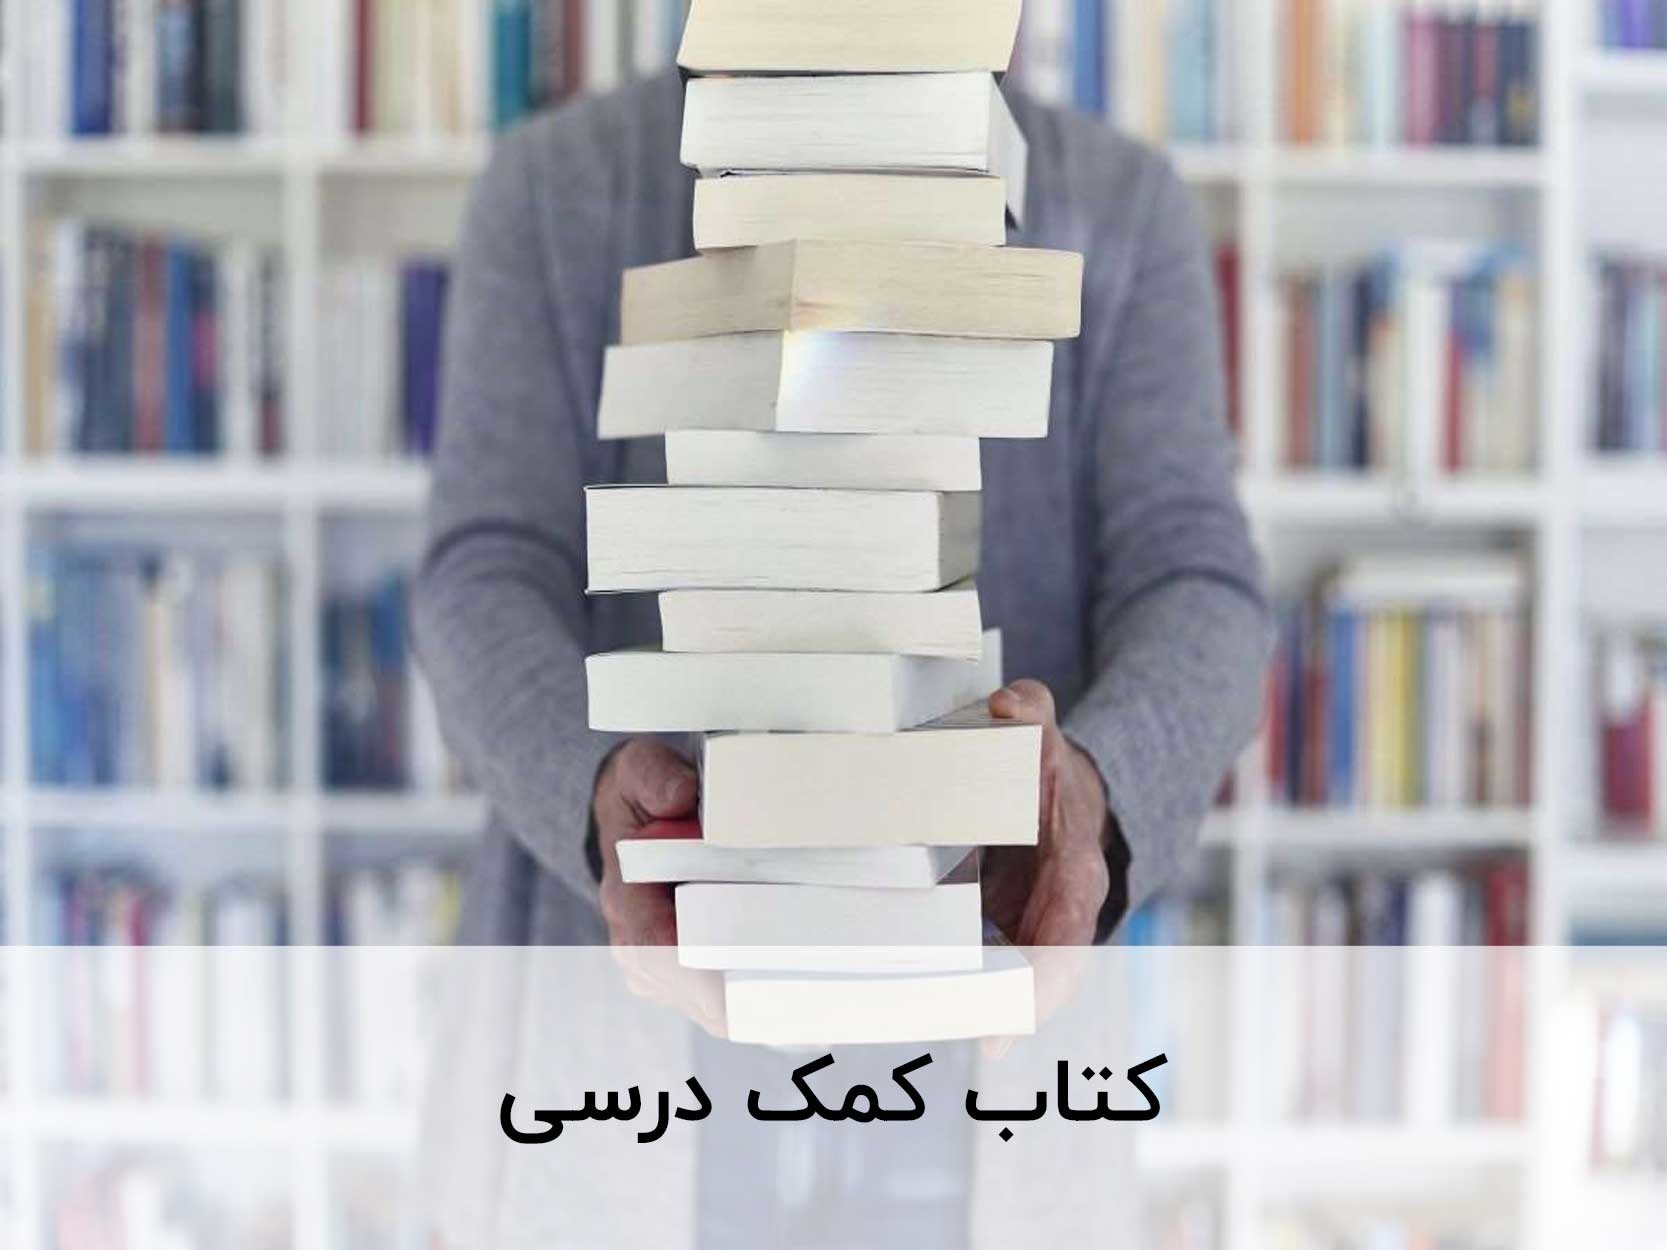 کتاب کمک درسی عربی را با تخفیف از تلکتاب بخرید